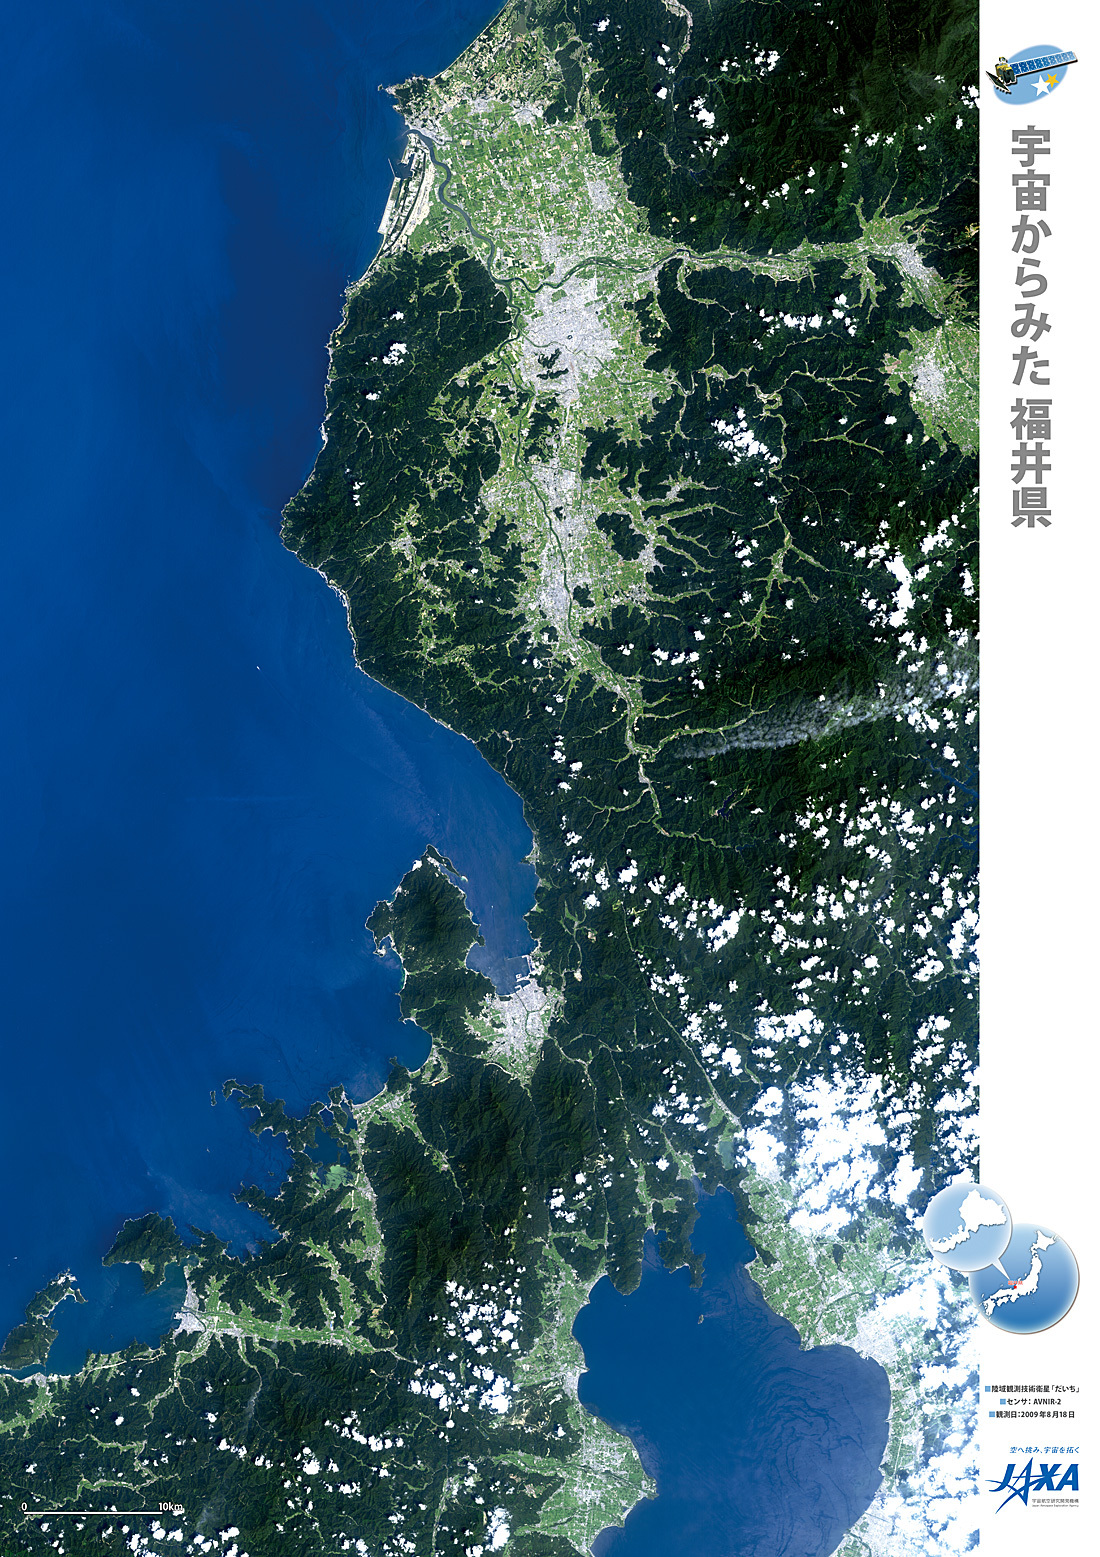 だいちから見た日本の都市 福井県:衛星画像（ポスター仕上げ）